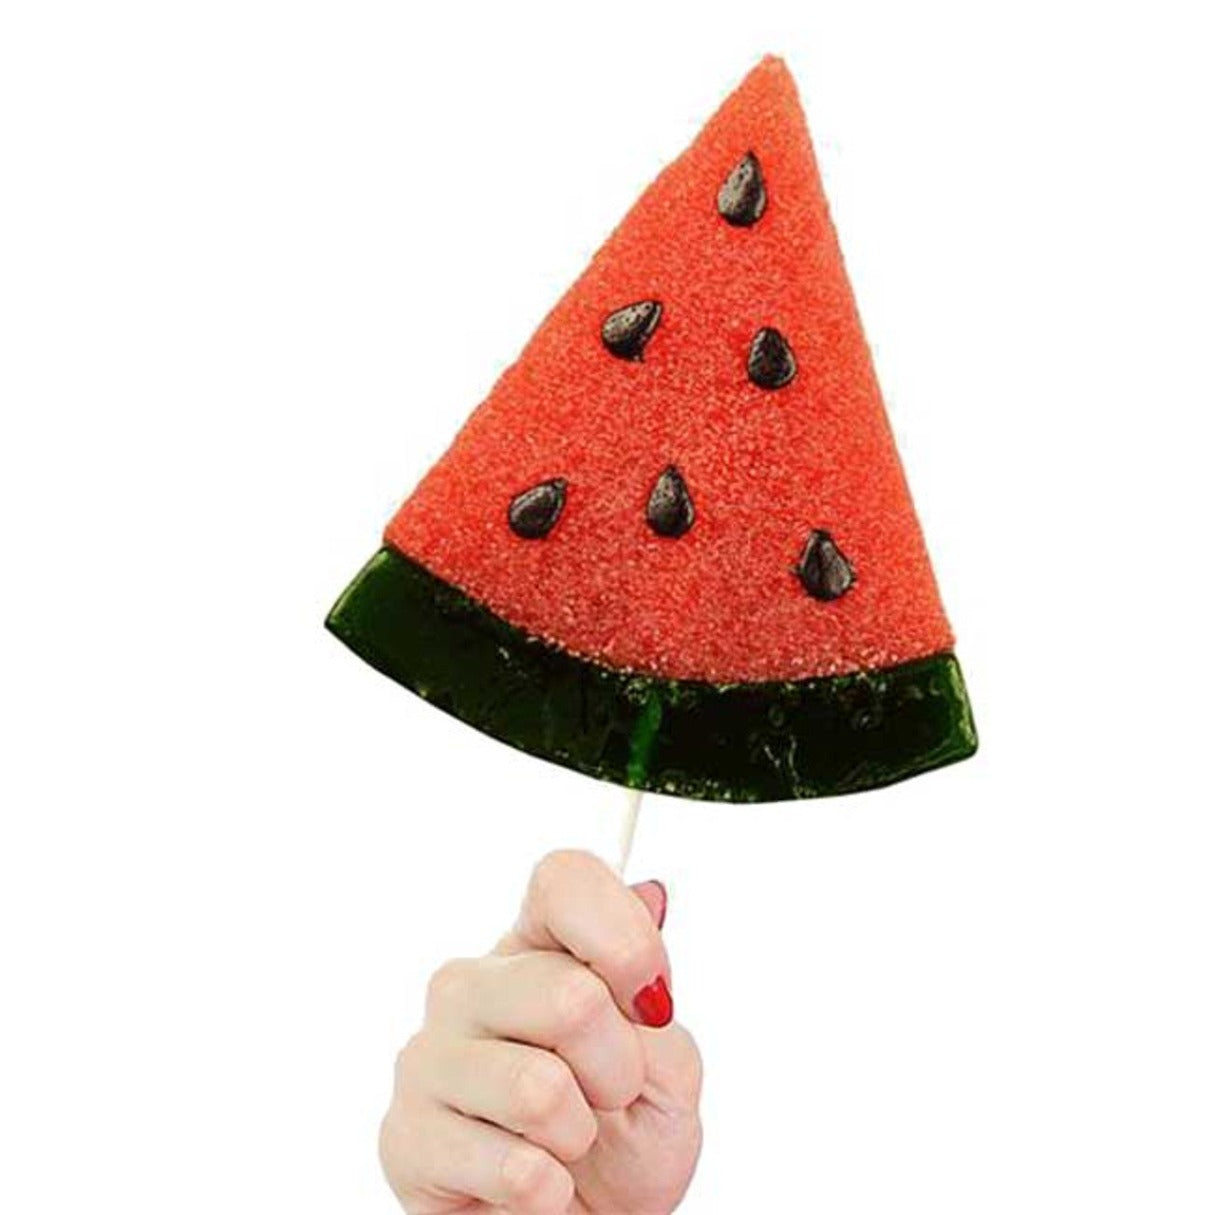 Giant Gummy Watermelon Slice 3oz - 12ct